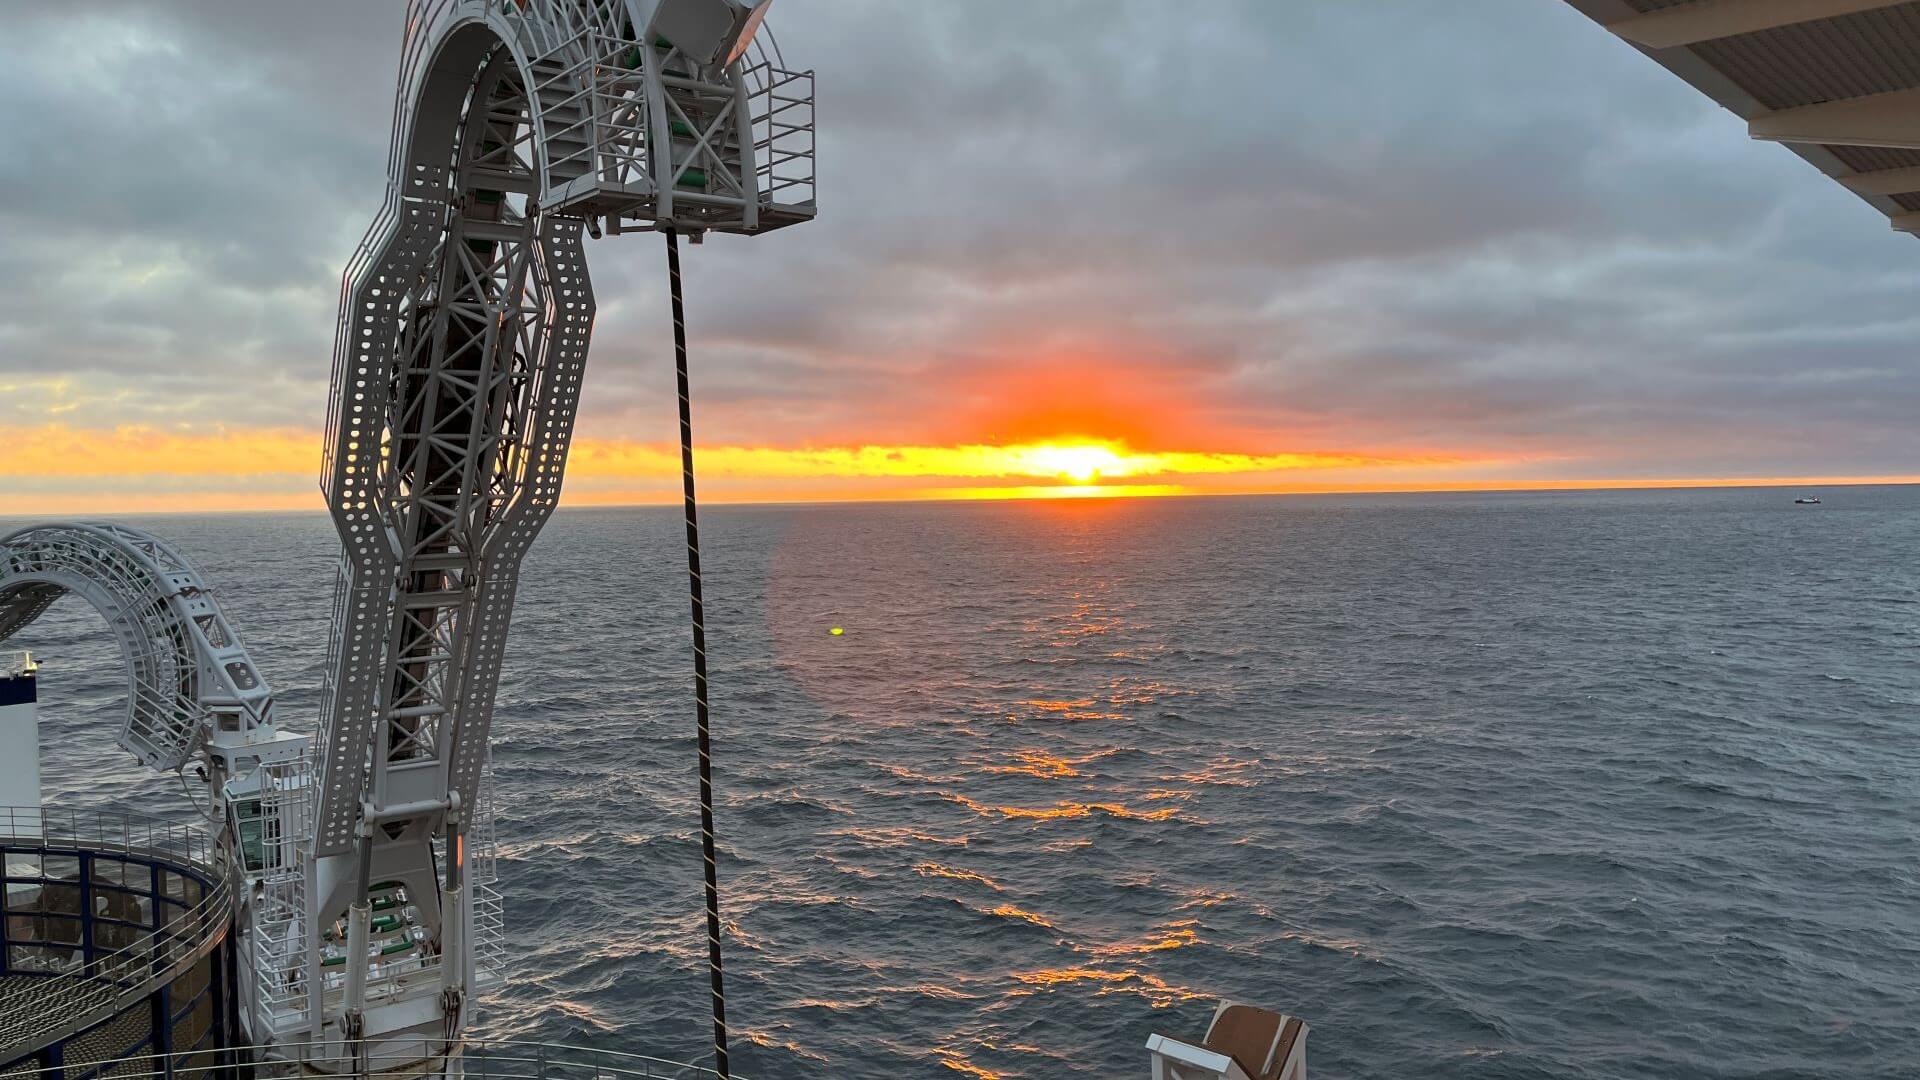 S'étendant sur 475 miles entre le Royaume-Uni et le Danemark, le câble sous-marin à haute tension Viking Link est considéré comme la plus longue interconnexion terrestre et sous-marine au monde. Photo : Grille nationale